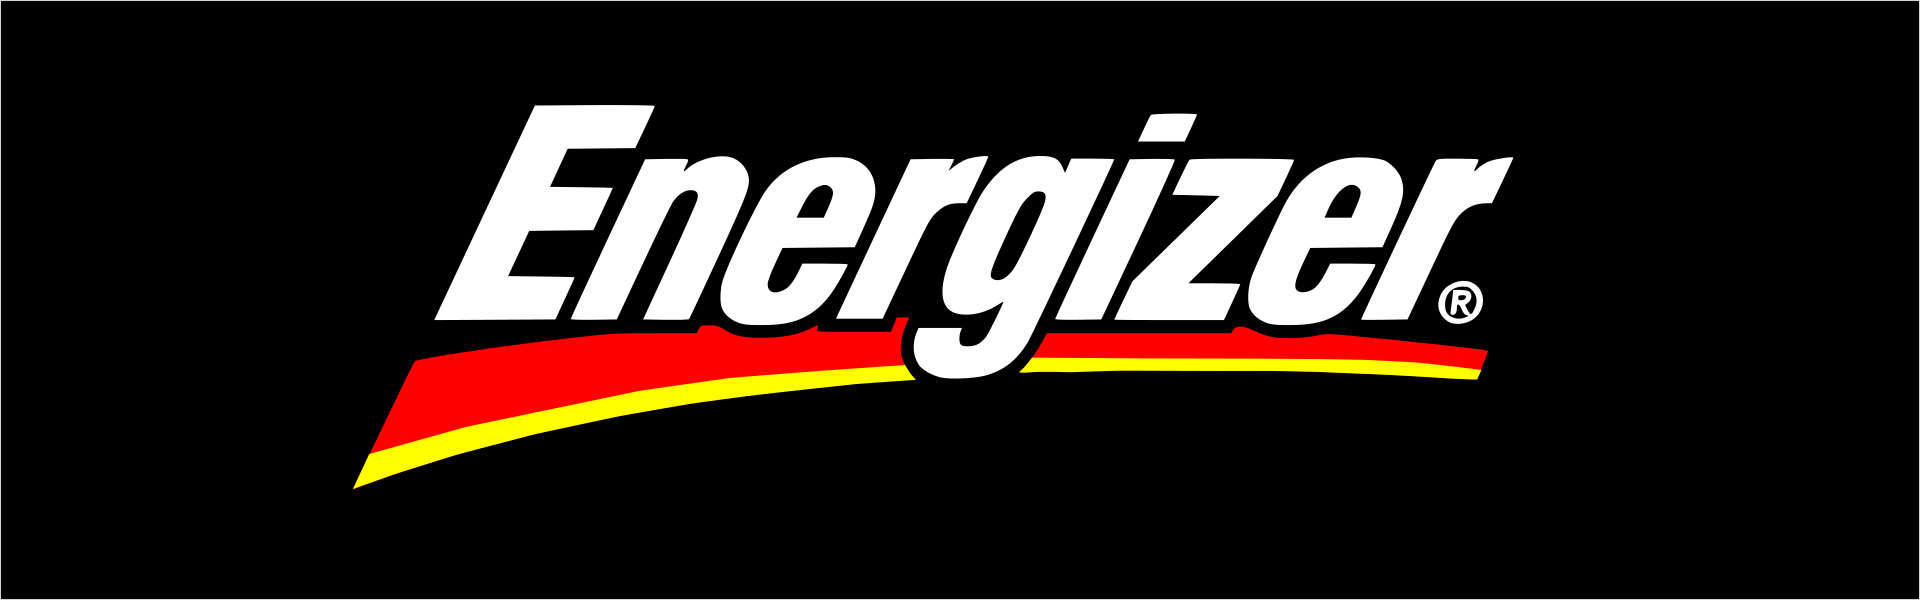 ENERGIZER Energizer